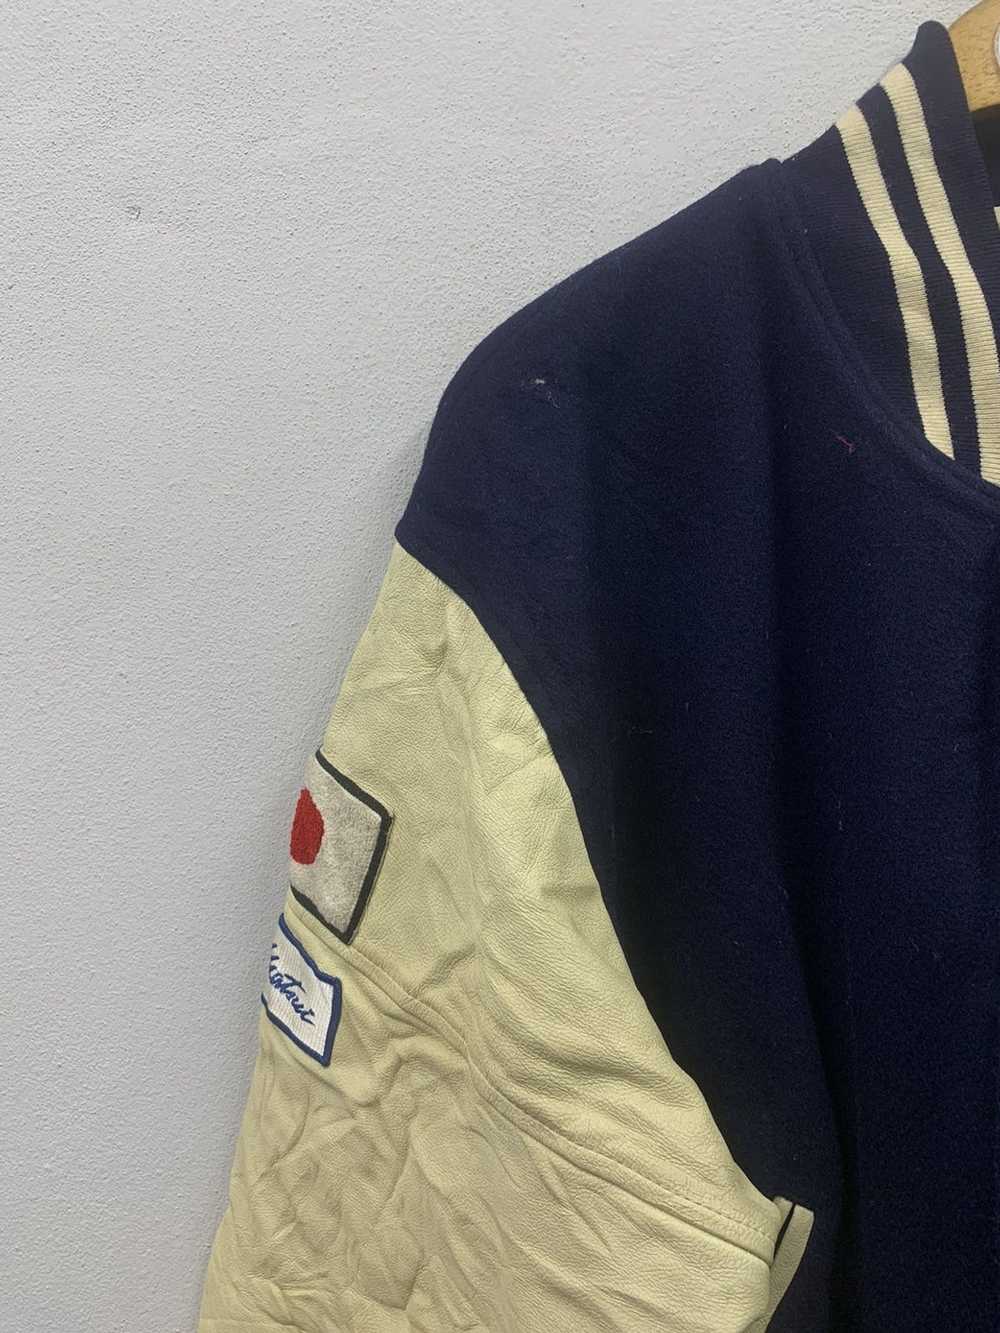 Hockey × Leather Jacket × Varsity Jacket Vintage … - image 7